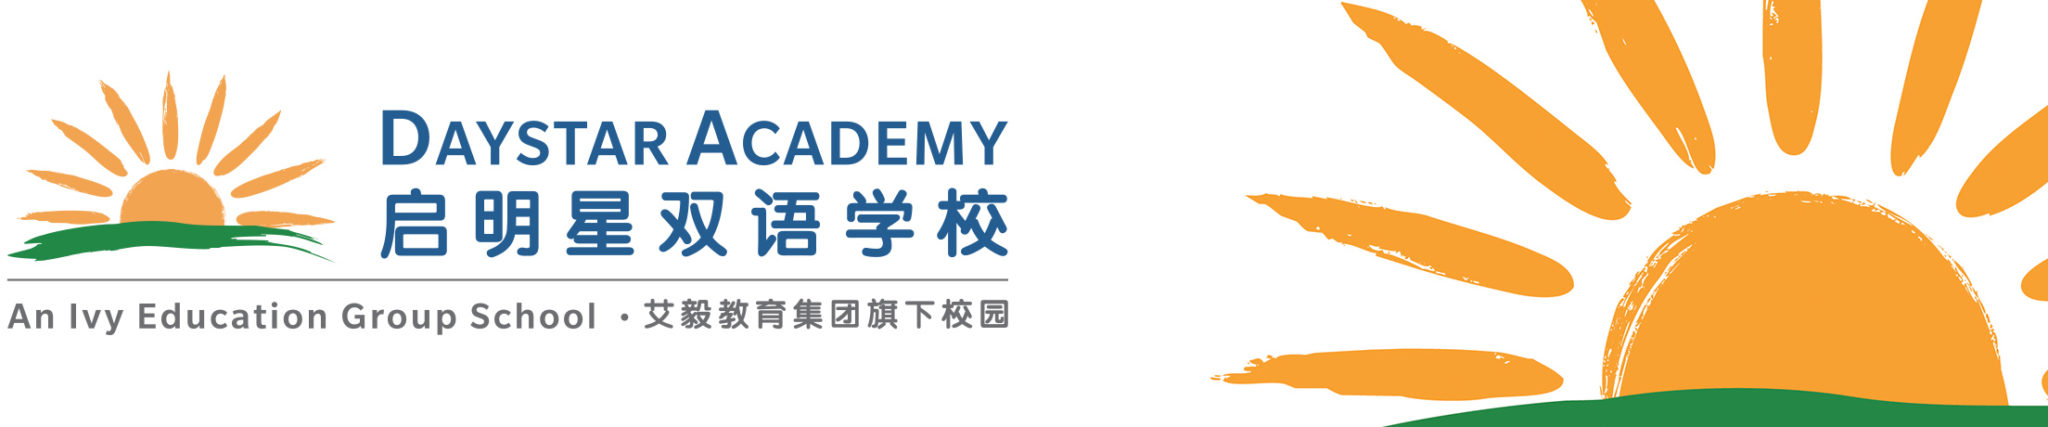 Wildfire Galleries - Daystar Academy, Beijing